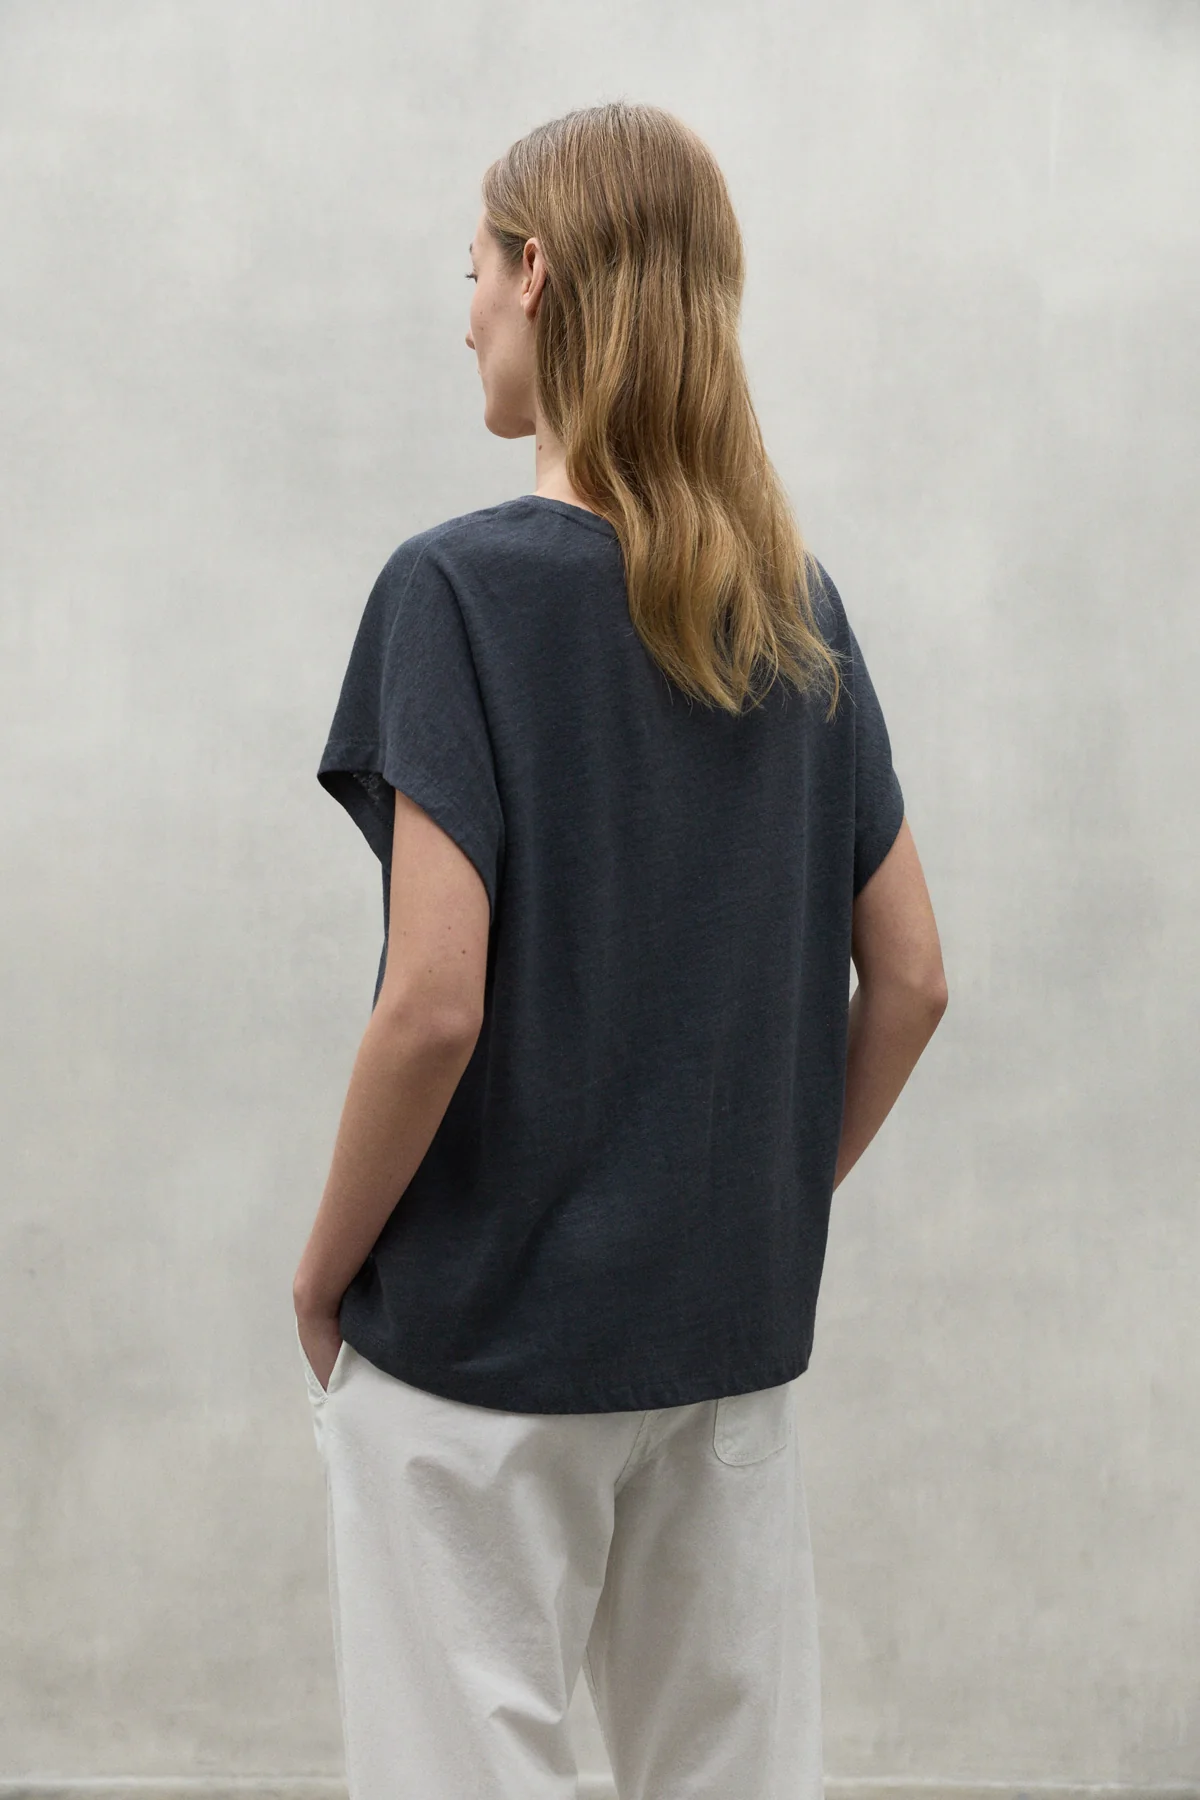 ECOALF camiseta en lino manga corta color gris y escote pico - 2